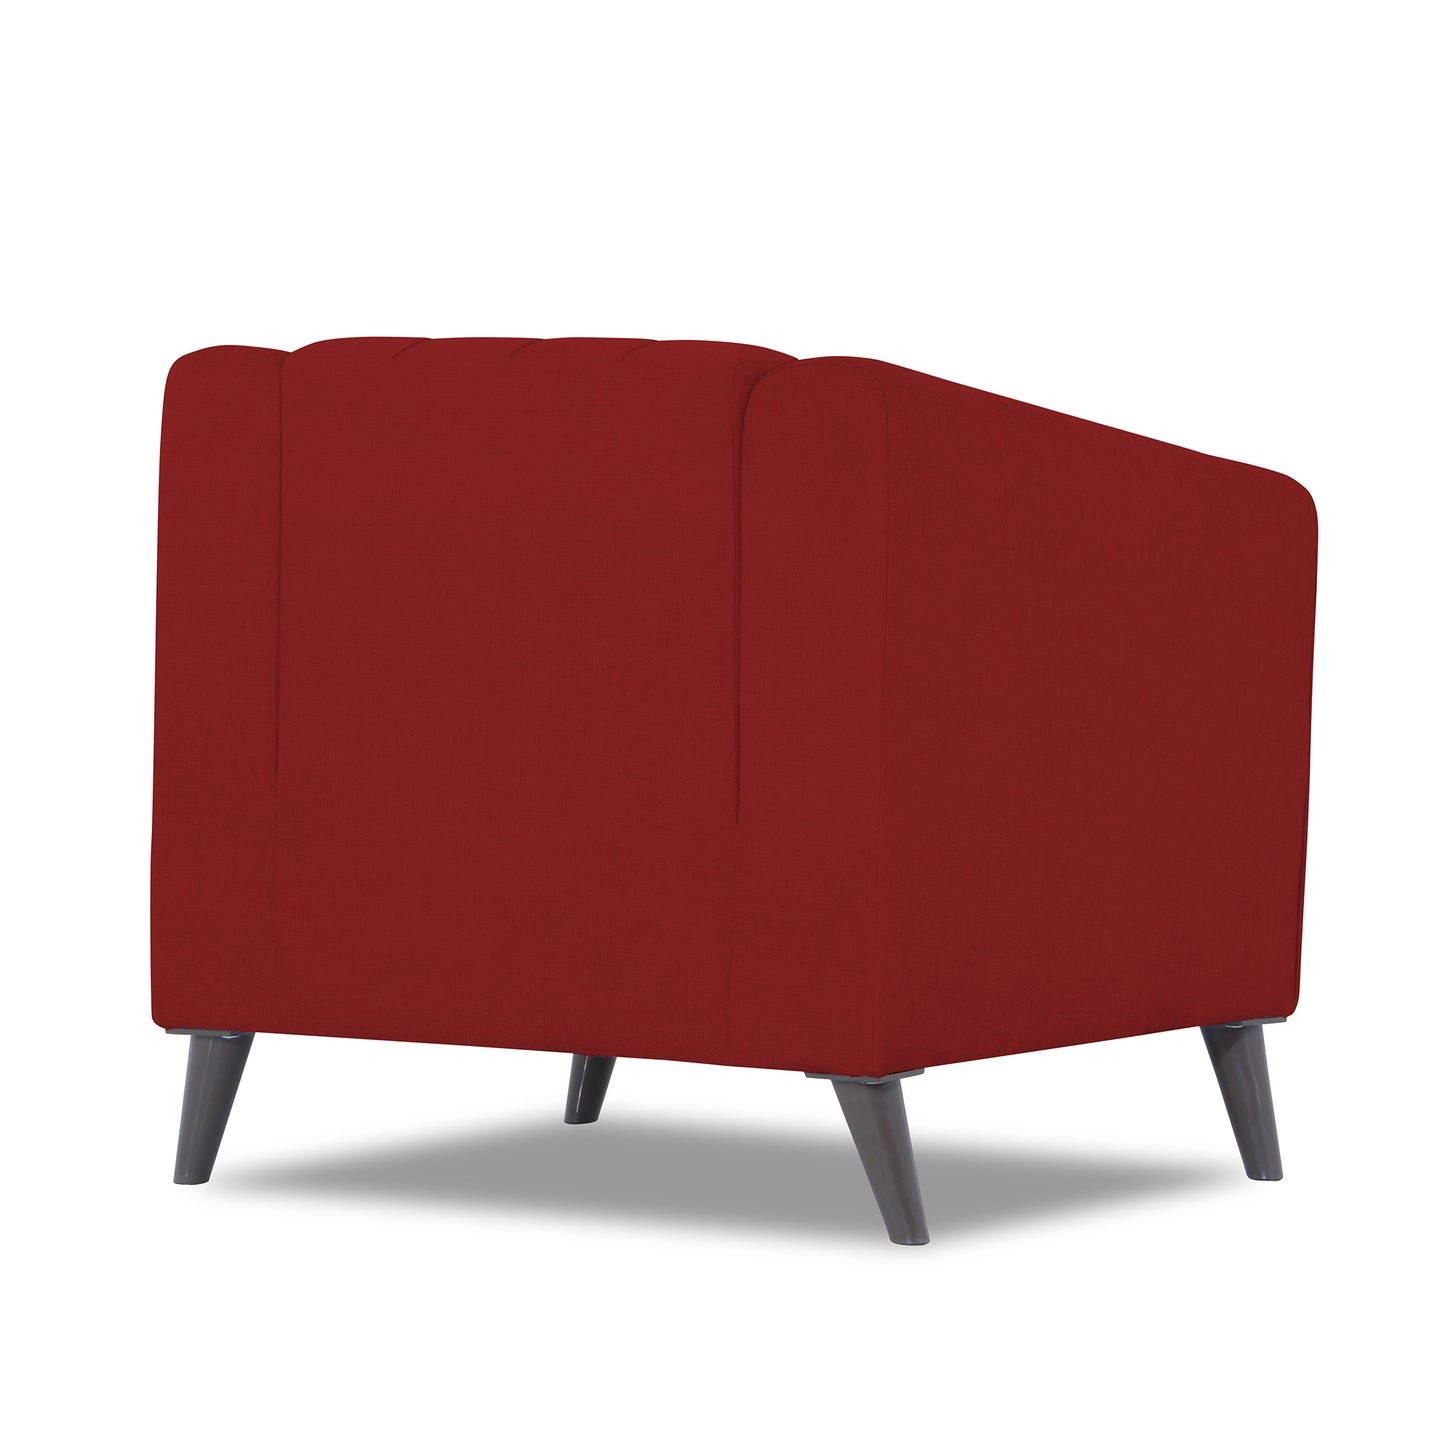 Adorn India Premium Laurel 1 Seater Sofa (Red)